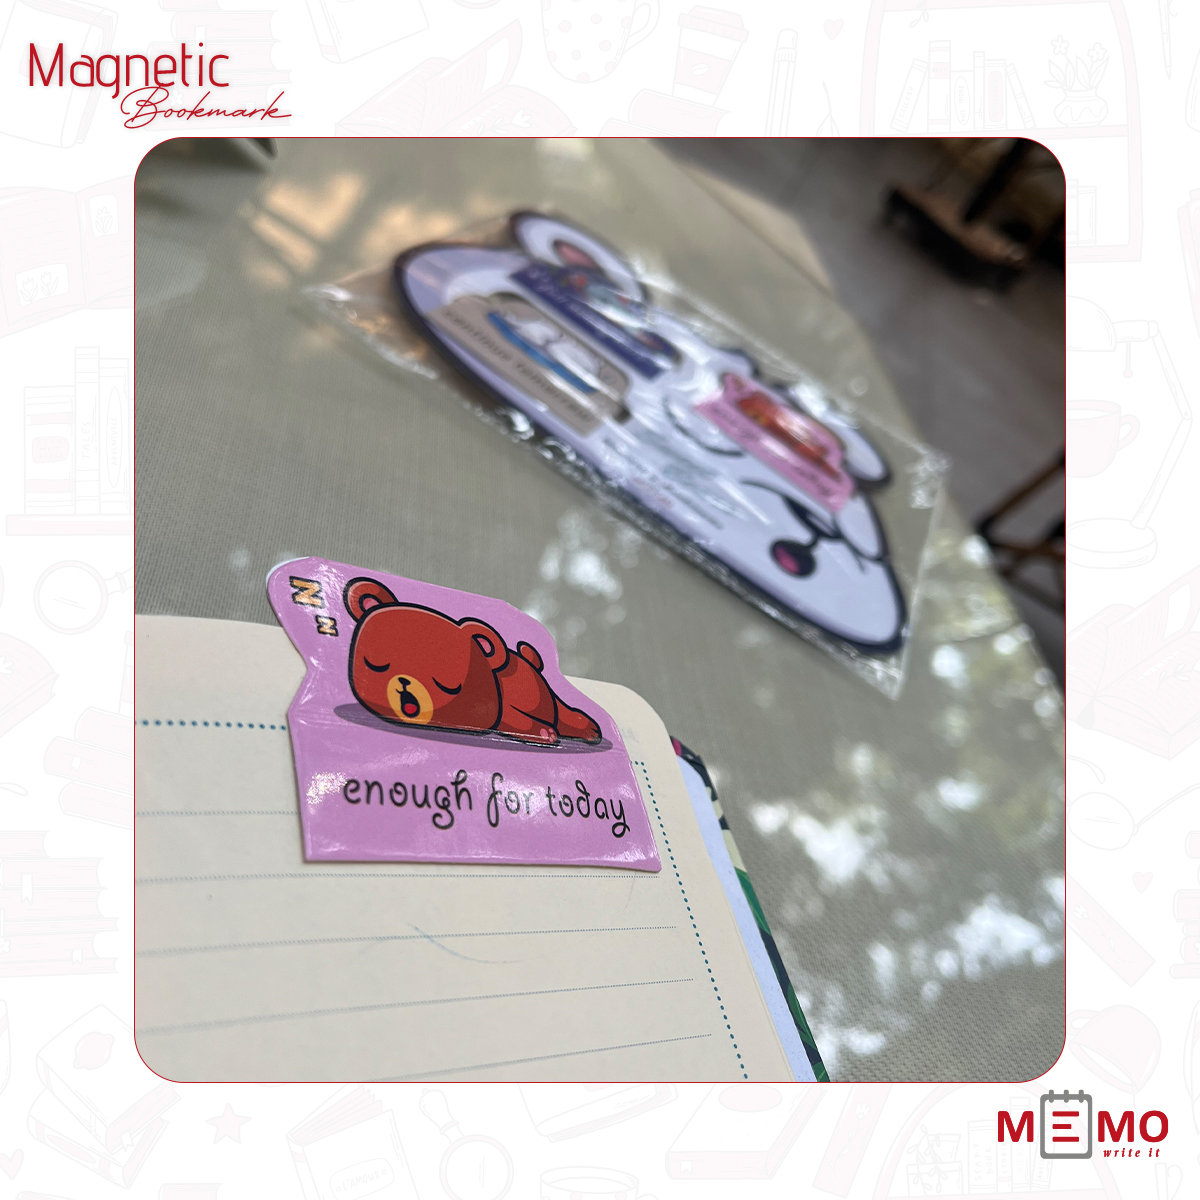 Memo  Magnetic Bookmarks "Sweet Bears" (3 pcs)